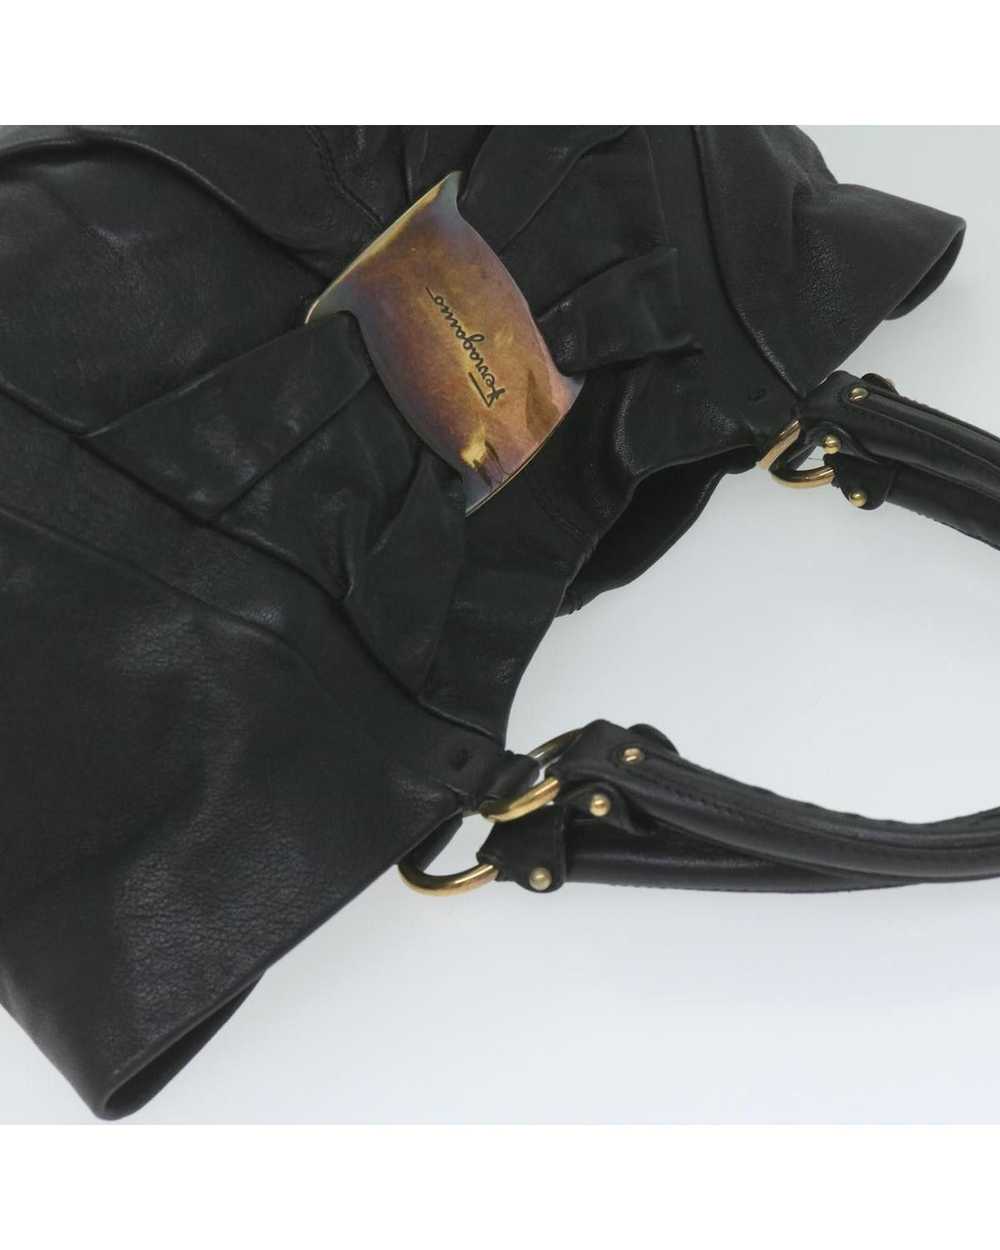 Salvatore Ferragamo Black Leather Tote Bag by Ita… - image 6